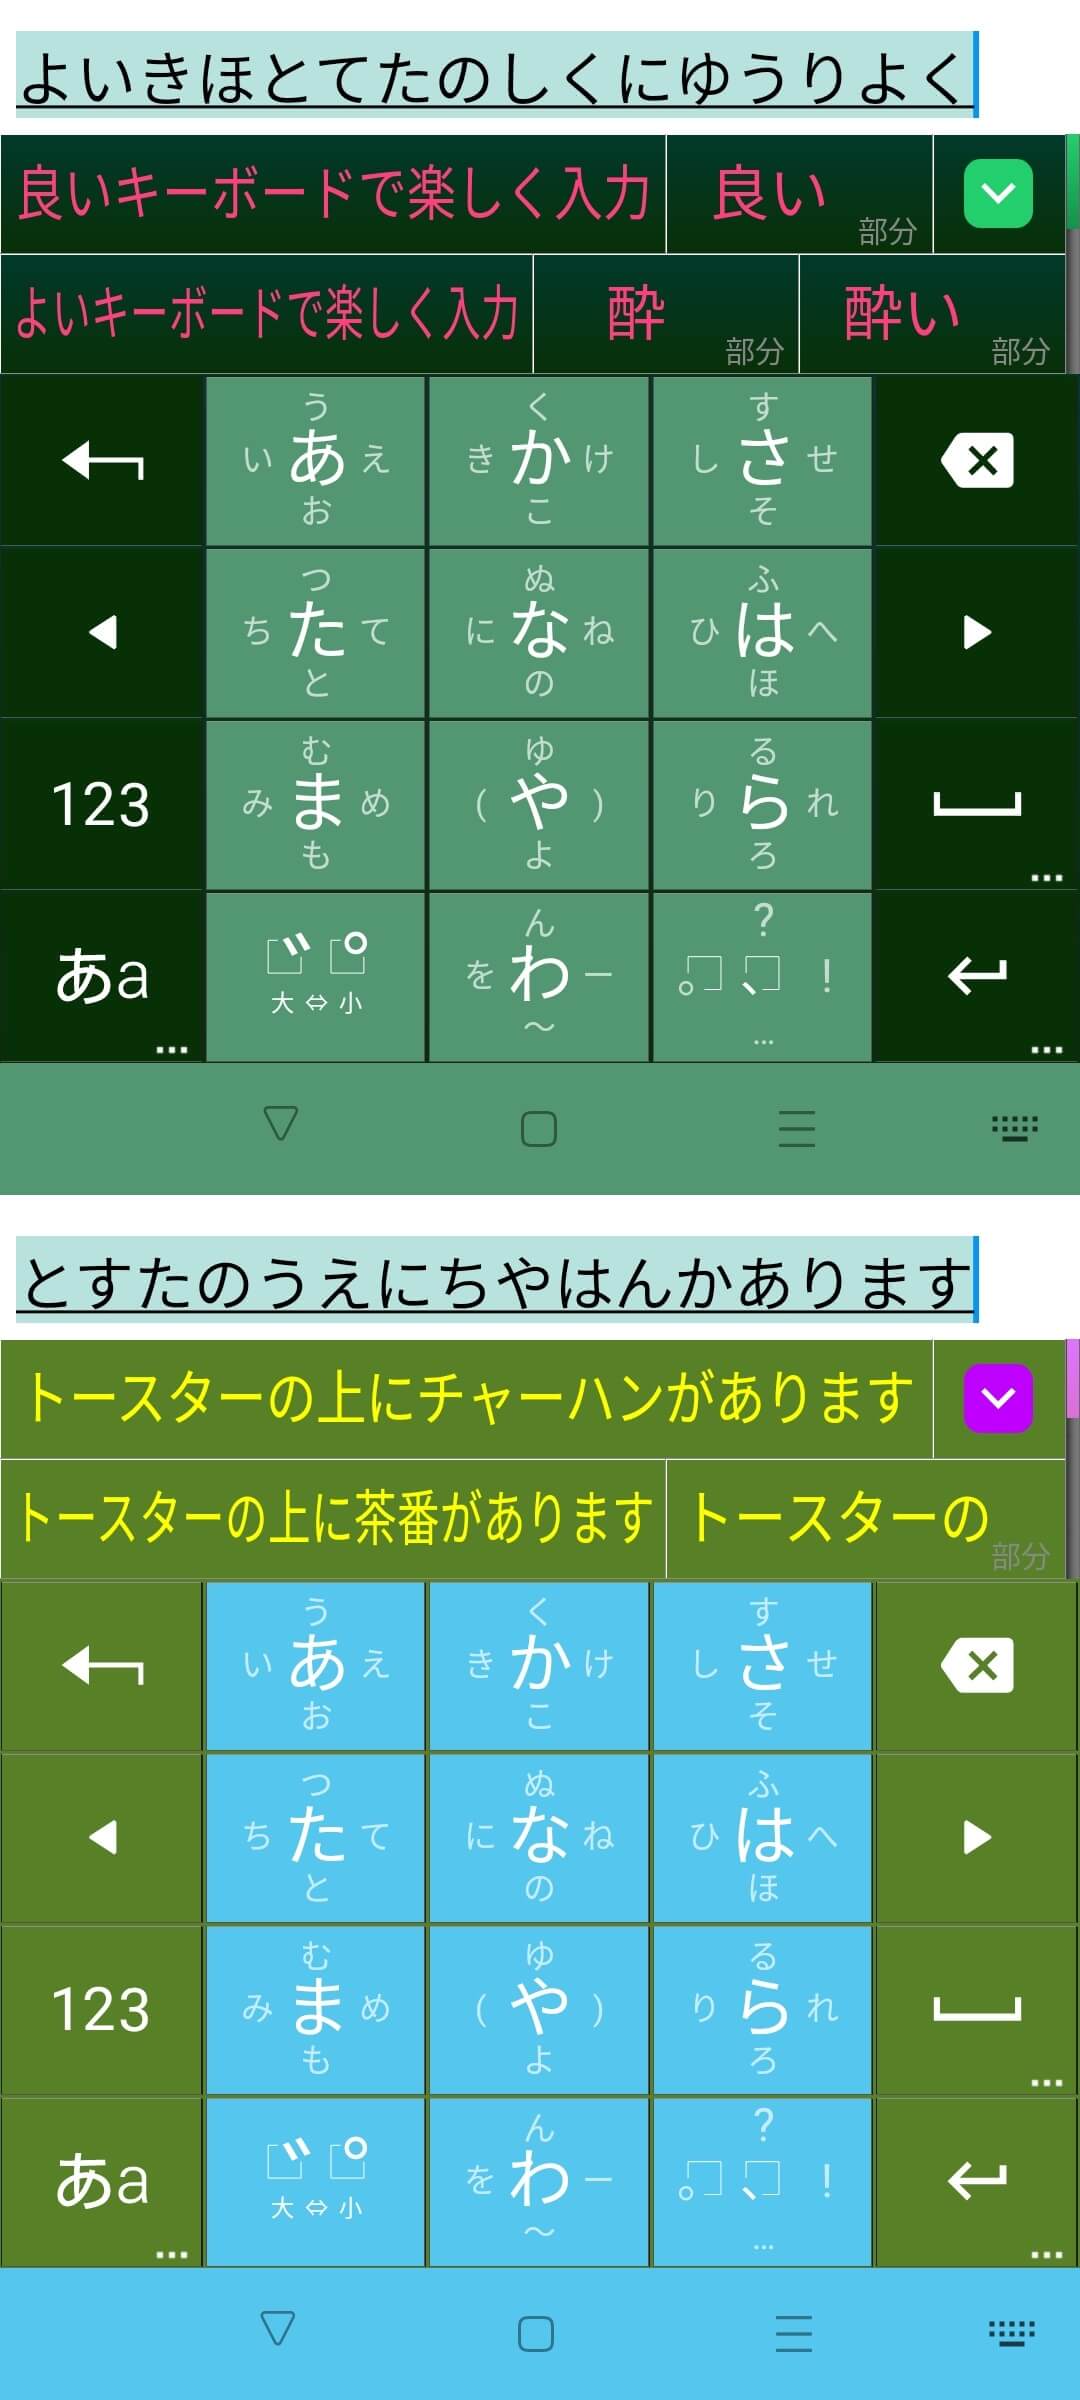 Android Screenshot 1